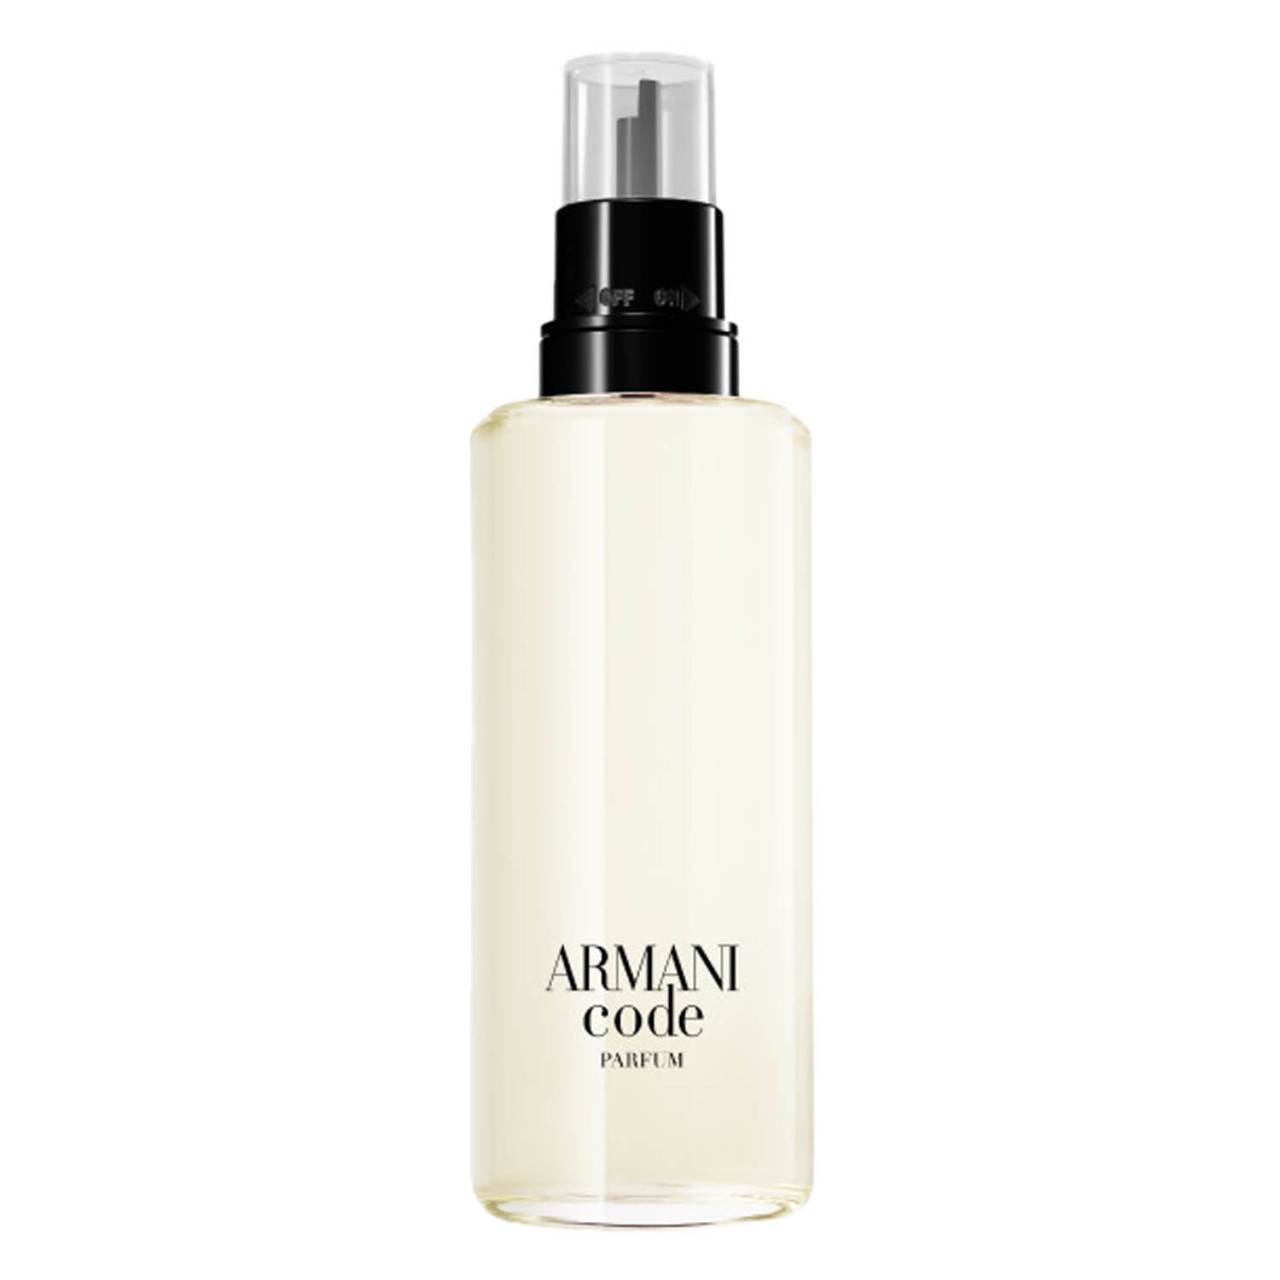 Armani Code - Le Parfum Refill von Giorgio Armani